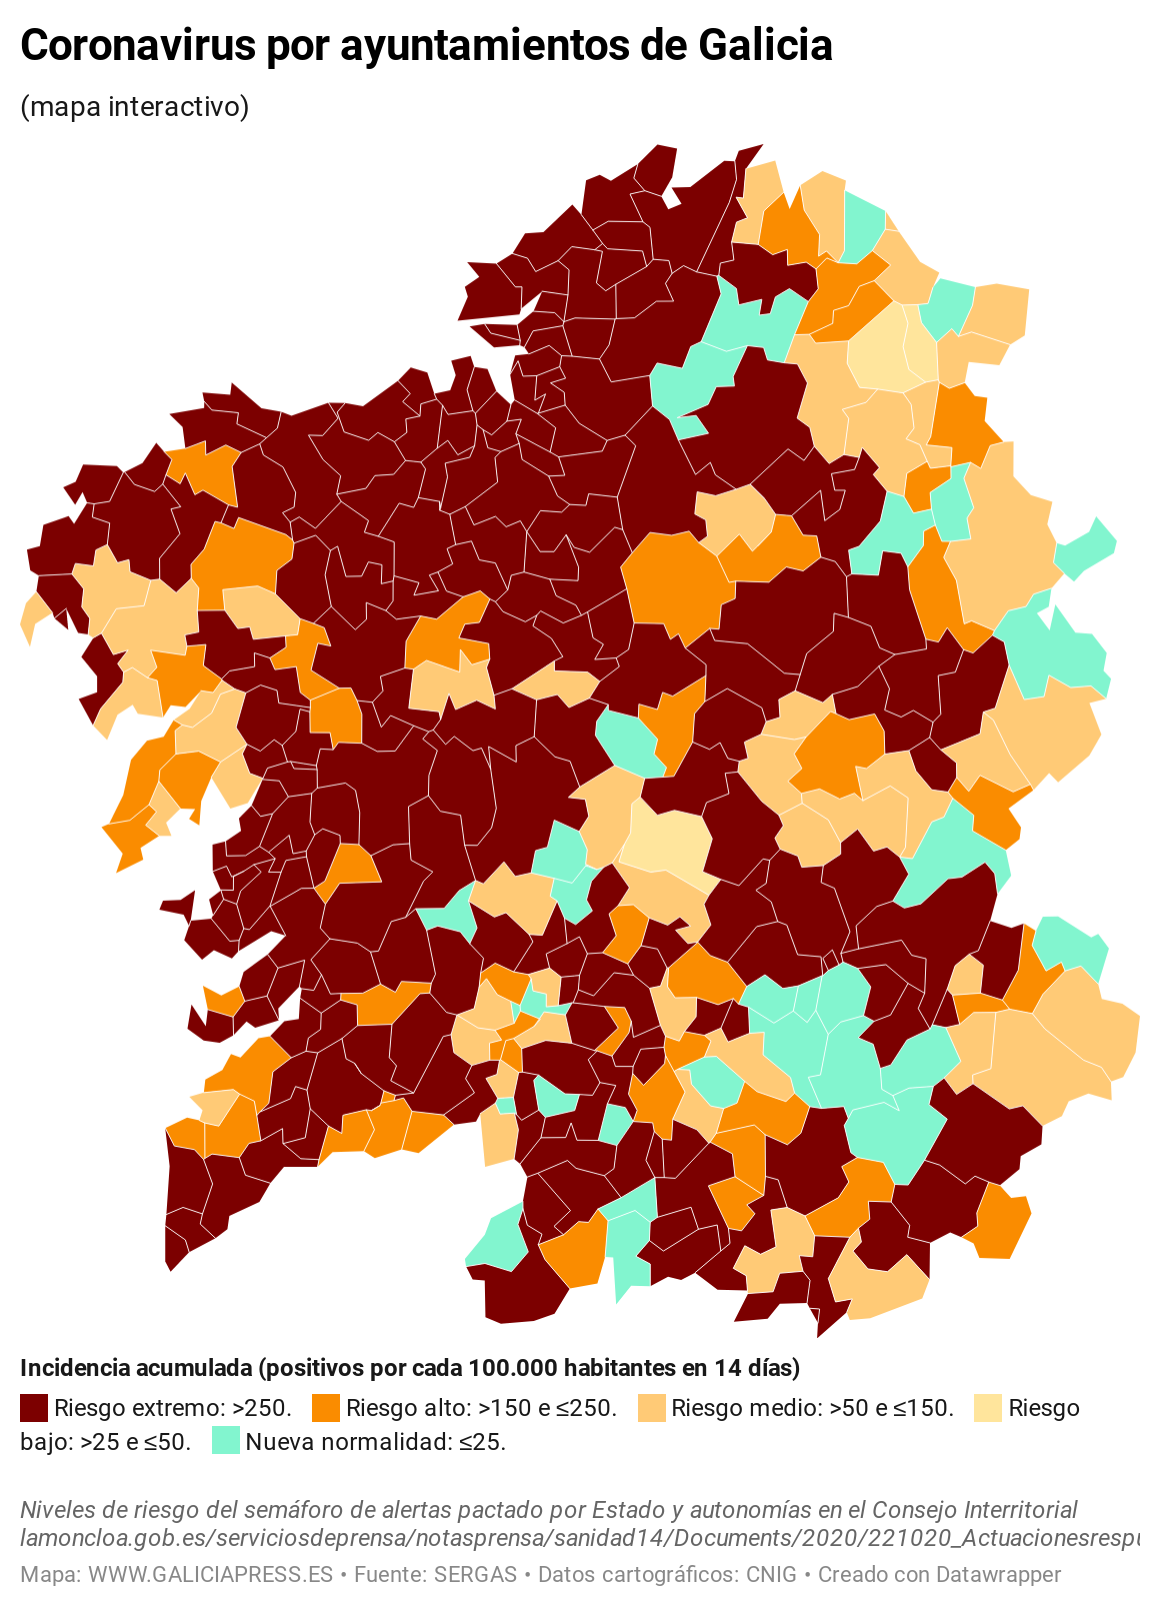 KV7EO coronavirus por ayuntamientos de galicia  (11)